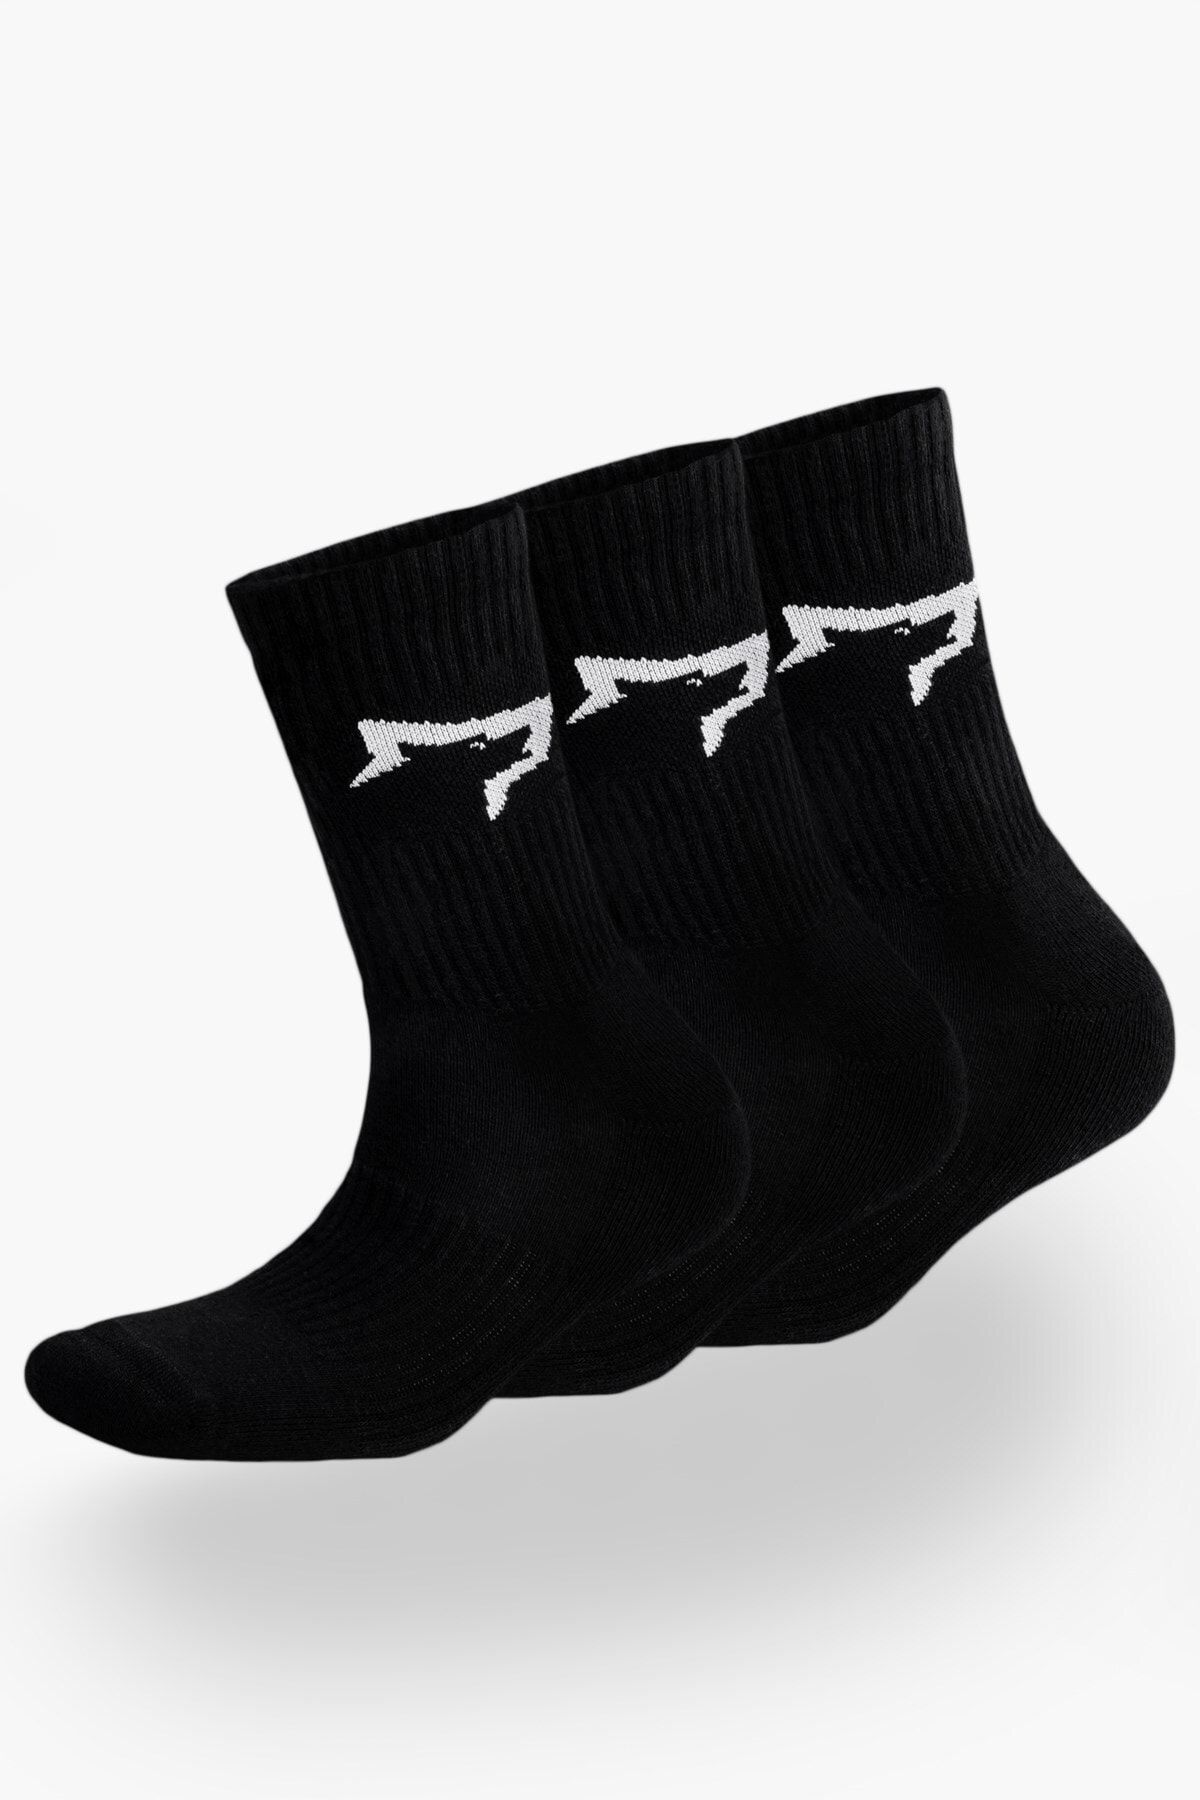 Gymwolves Atlatik Spor Çorap | 3 Lü Paket | Siyah | Unisex Çorap | Sock |